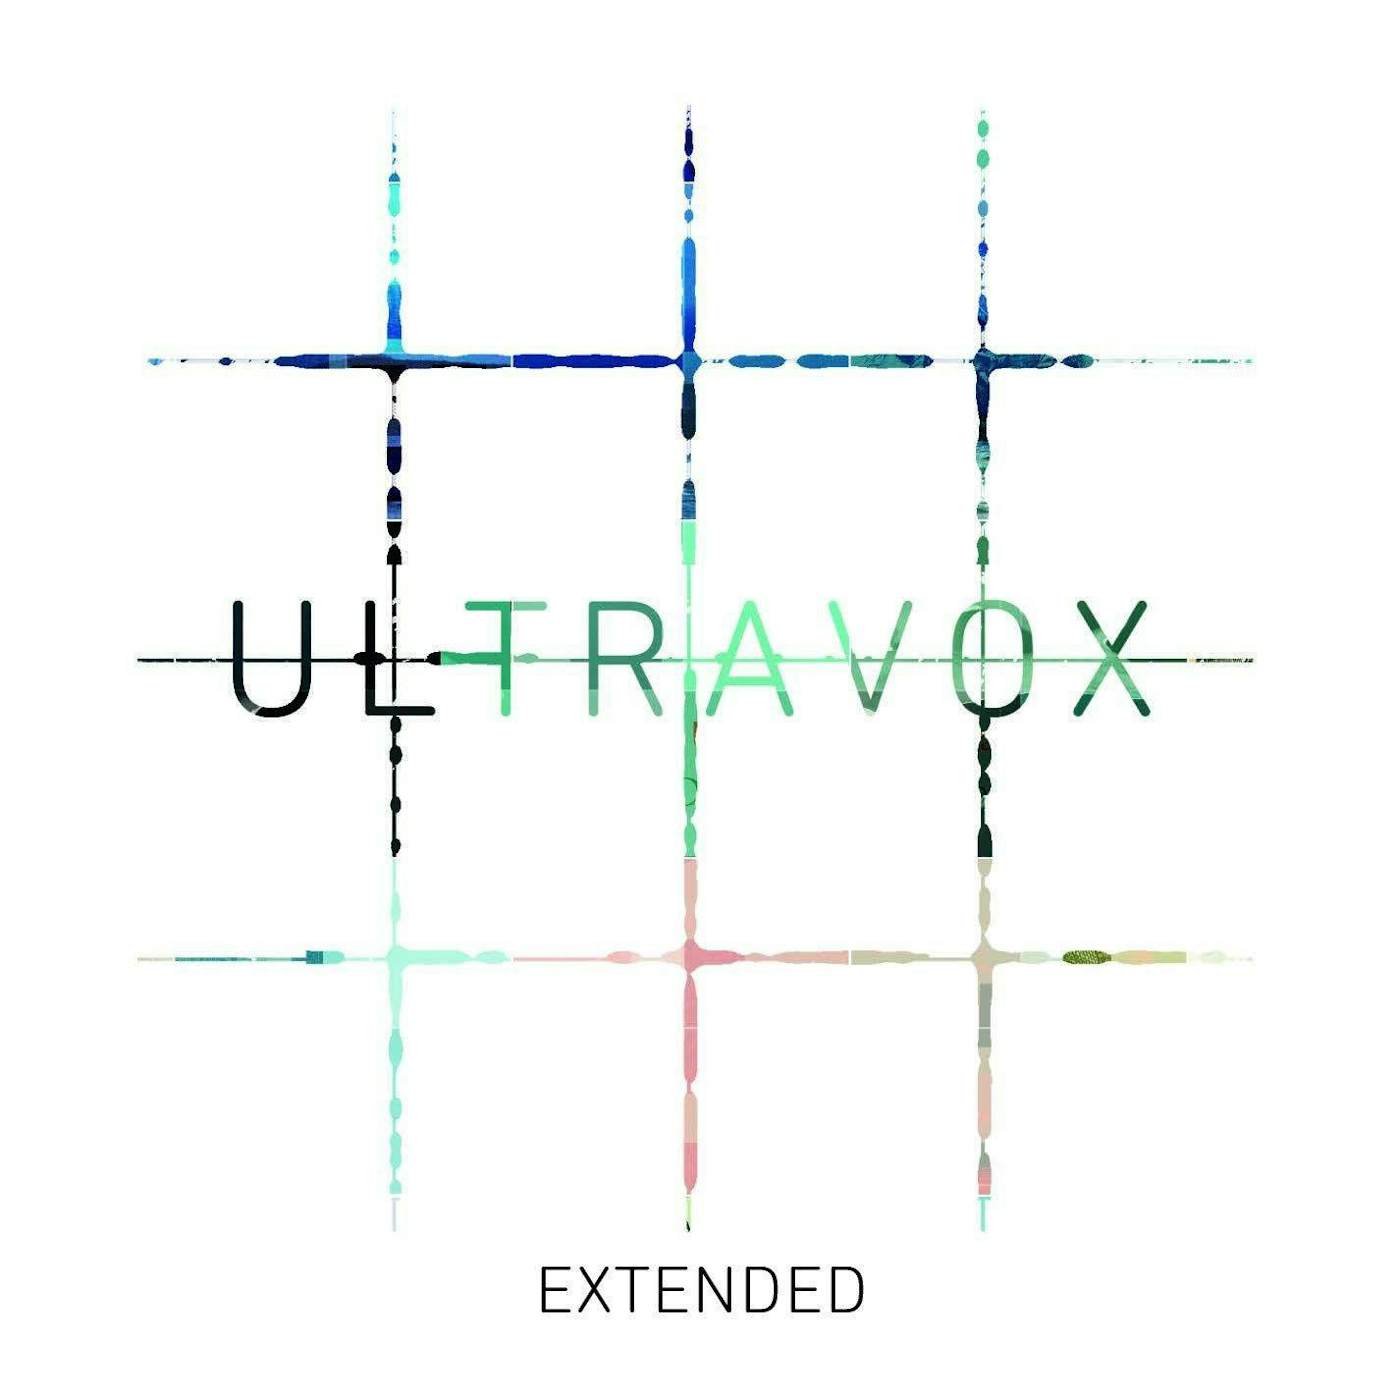 Ultravox Extended (4LP) Box Set (Vinyl)